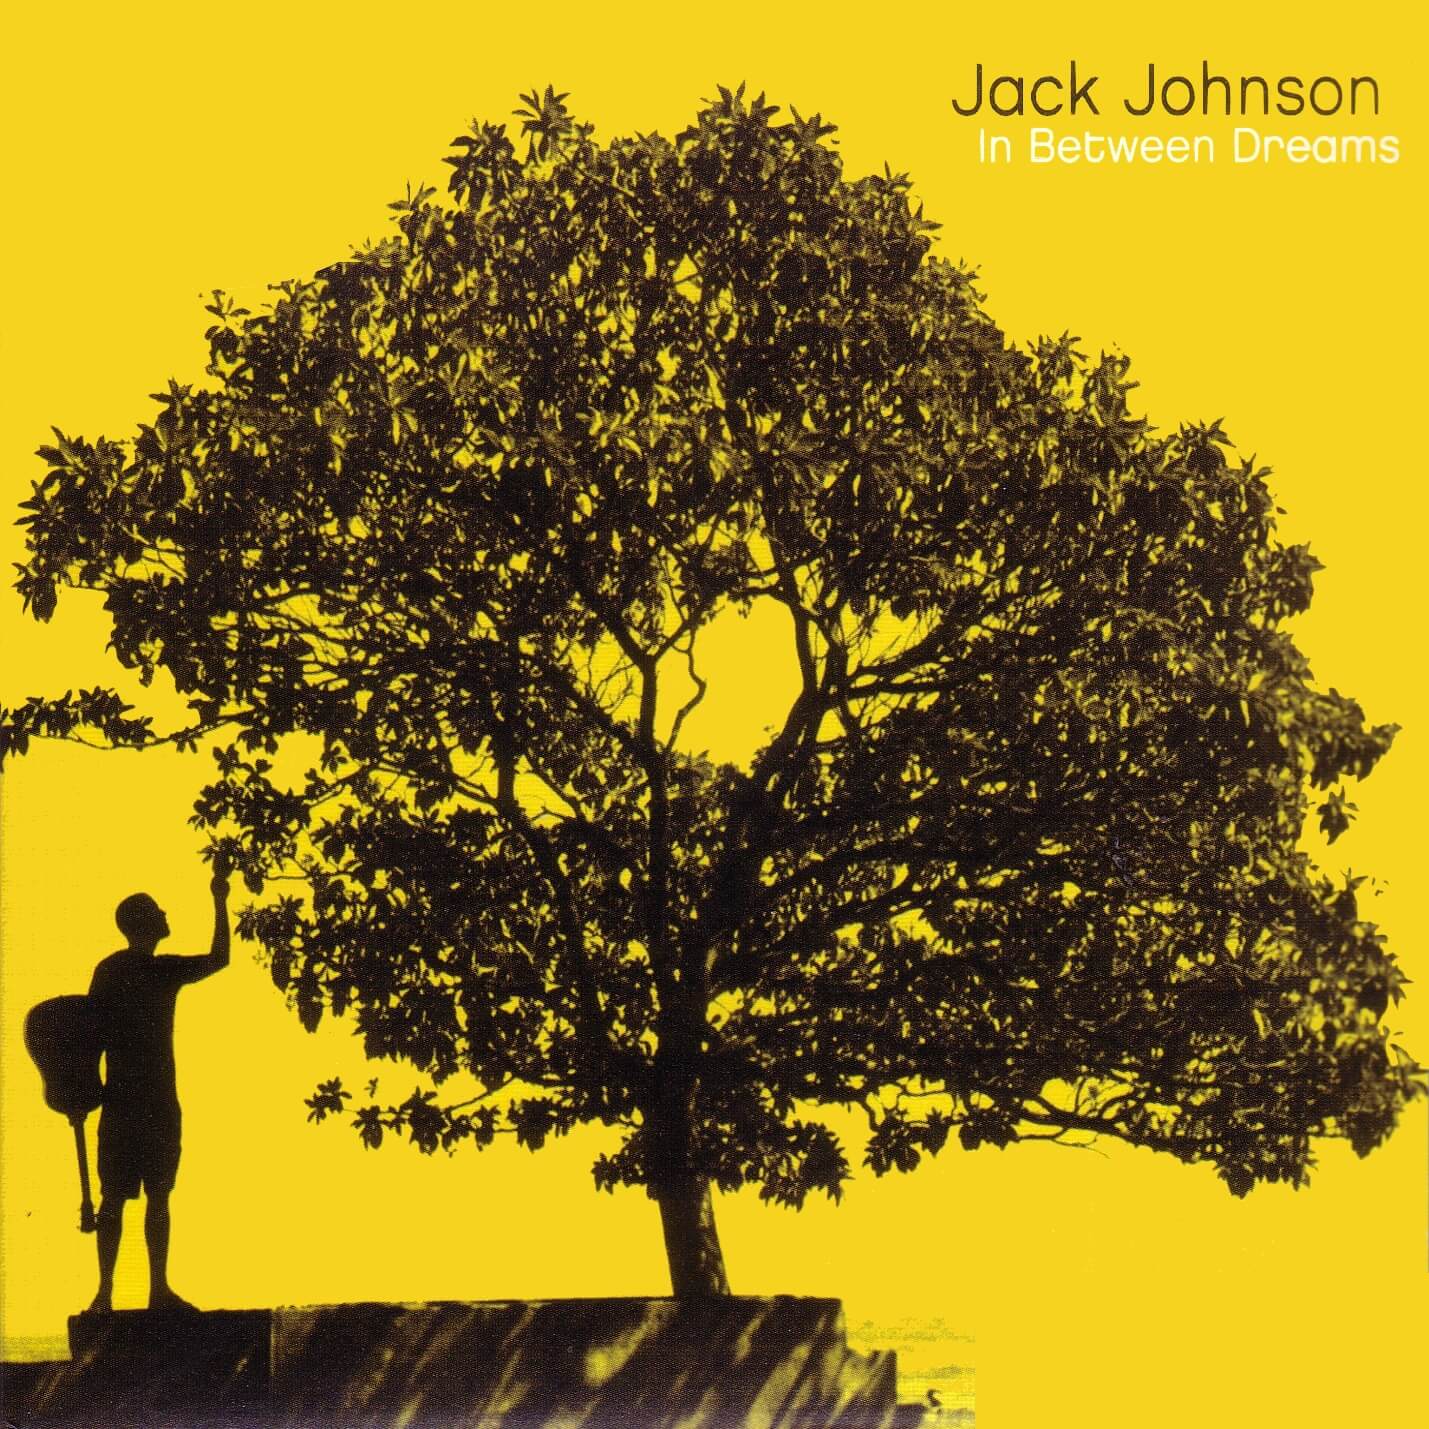 Jack Johnson – Better Together